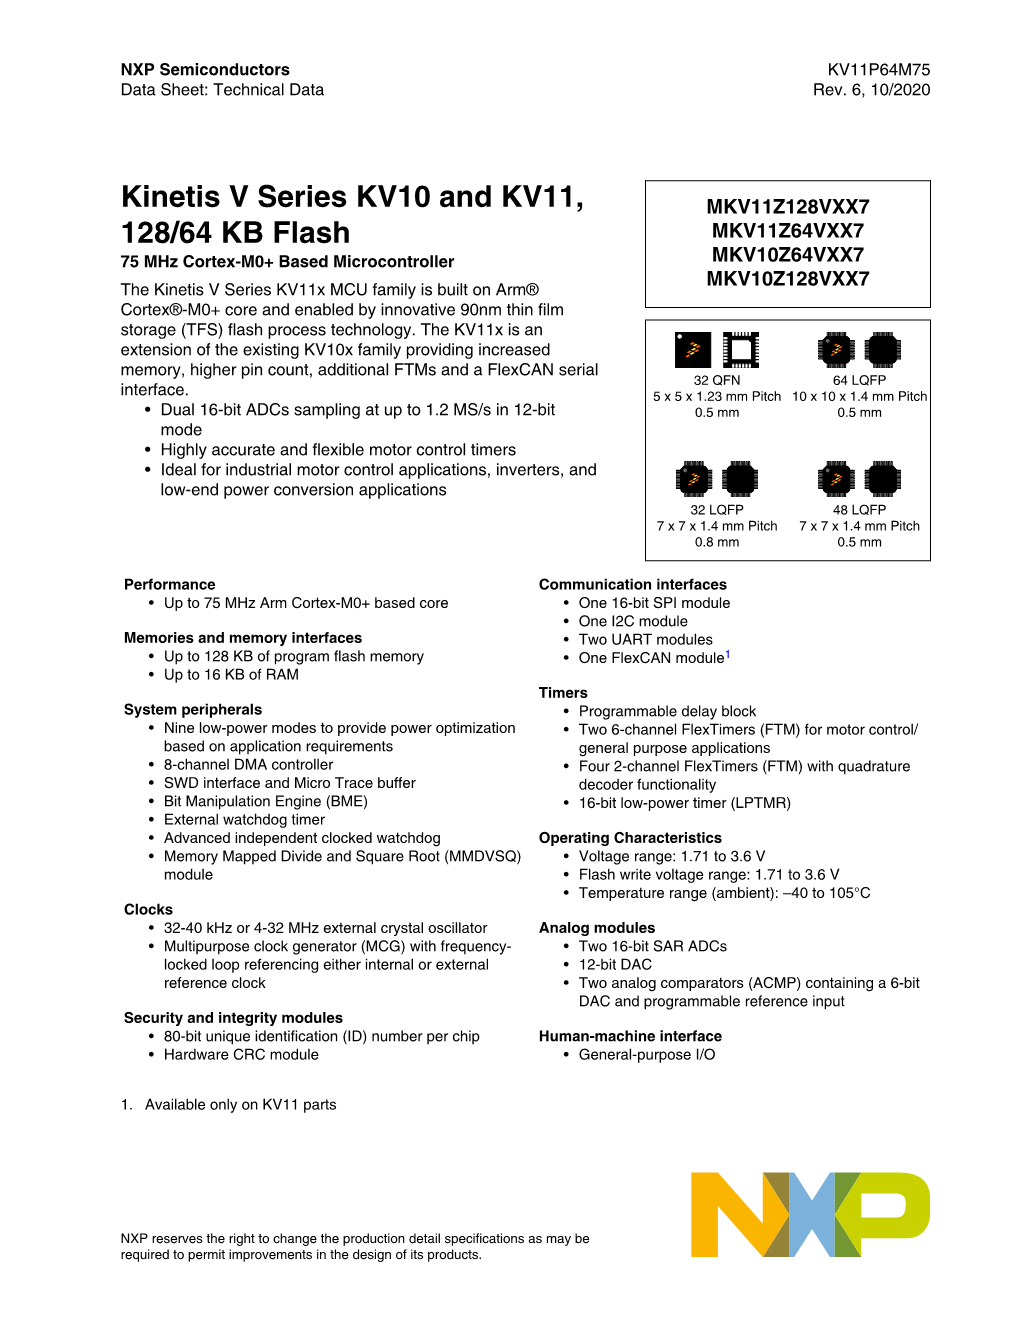 Kinetis V Series KV10 and KV11, 128/64 KB Flash, Rev